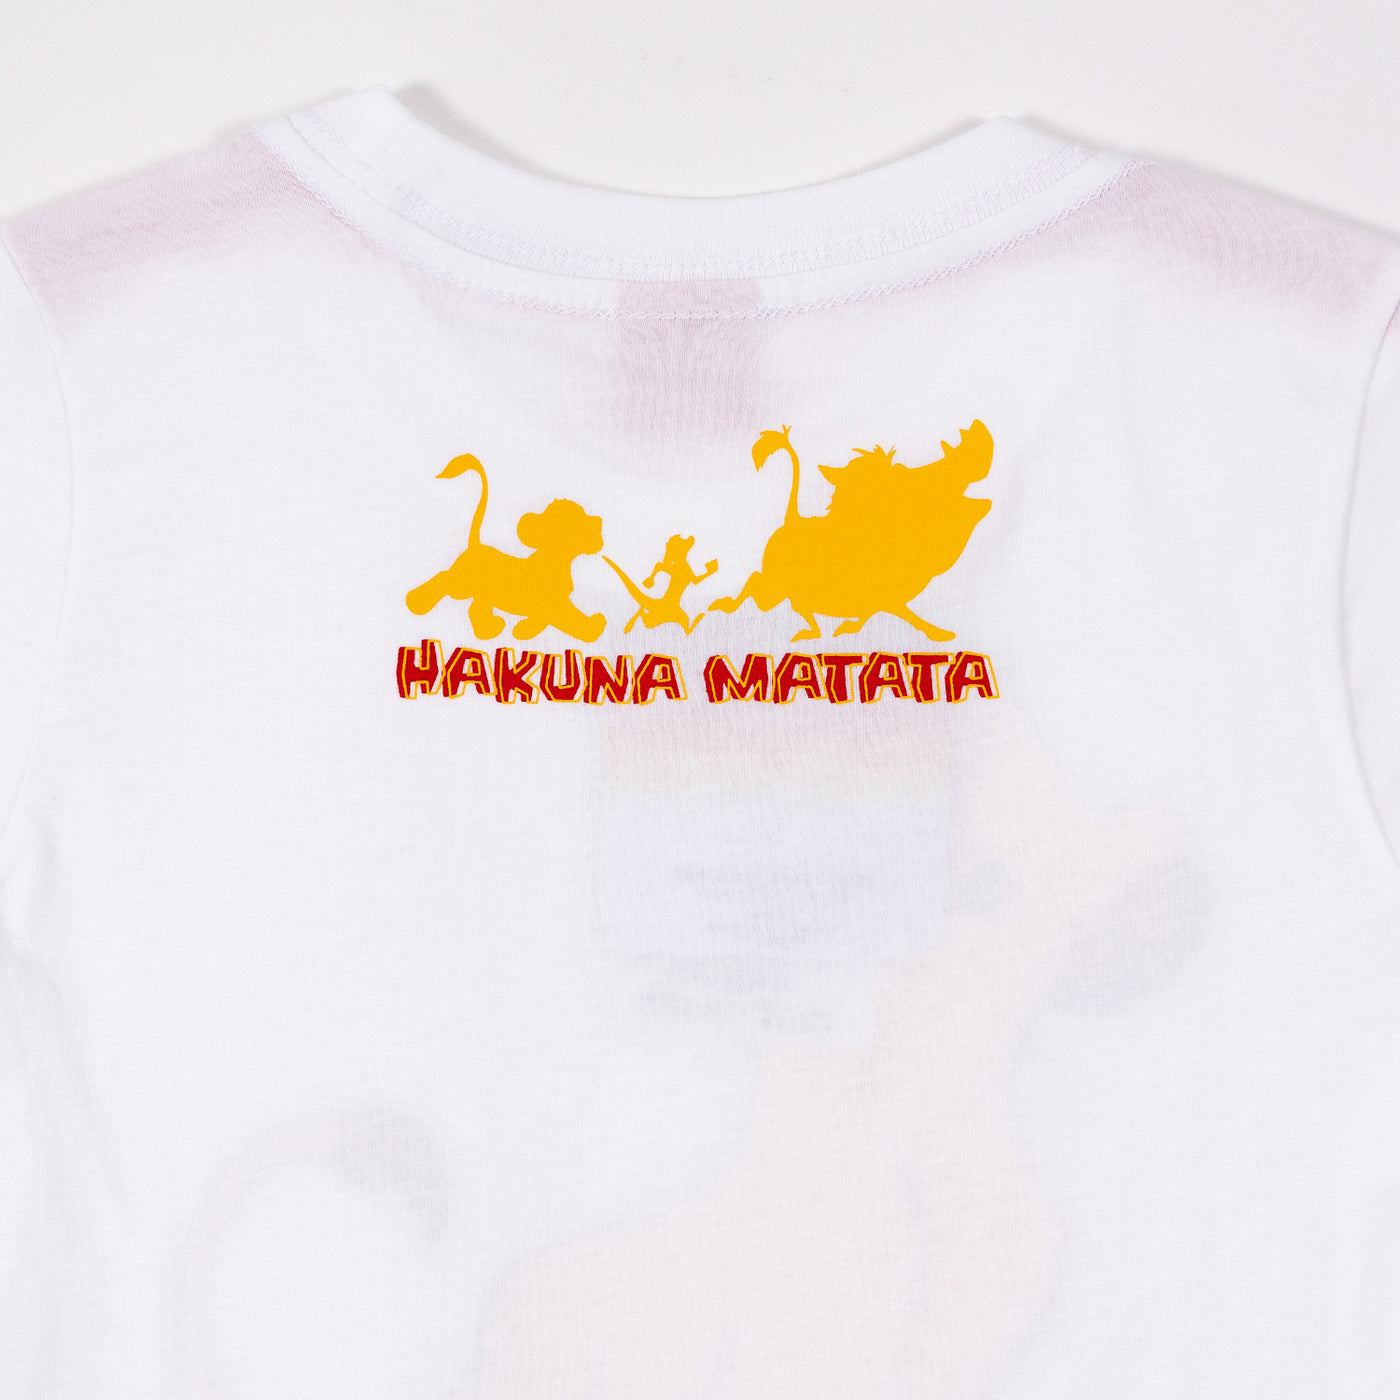 Lion King Boy Simba T-shirt - เสื้อยืดเด็กผู้ชายไลอ้อนคิงลายซิมบ้า